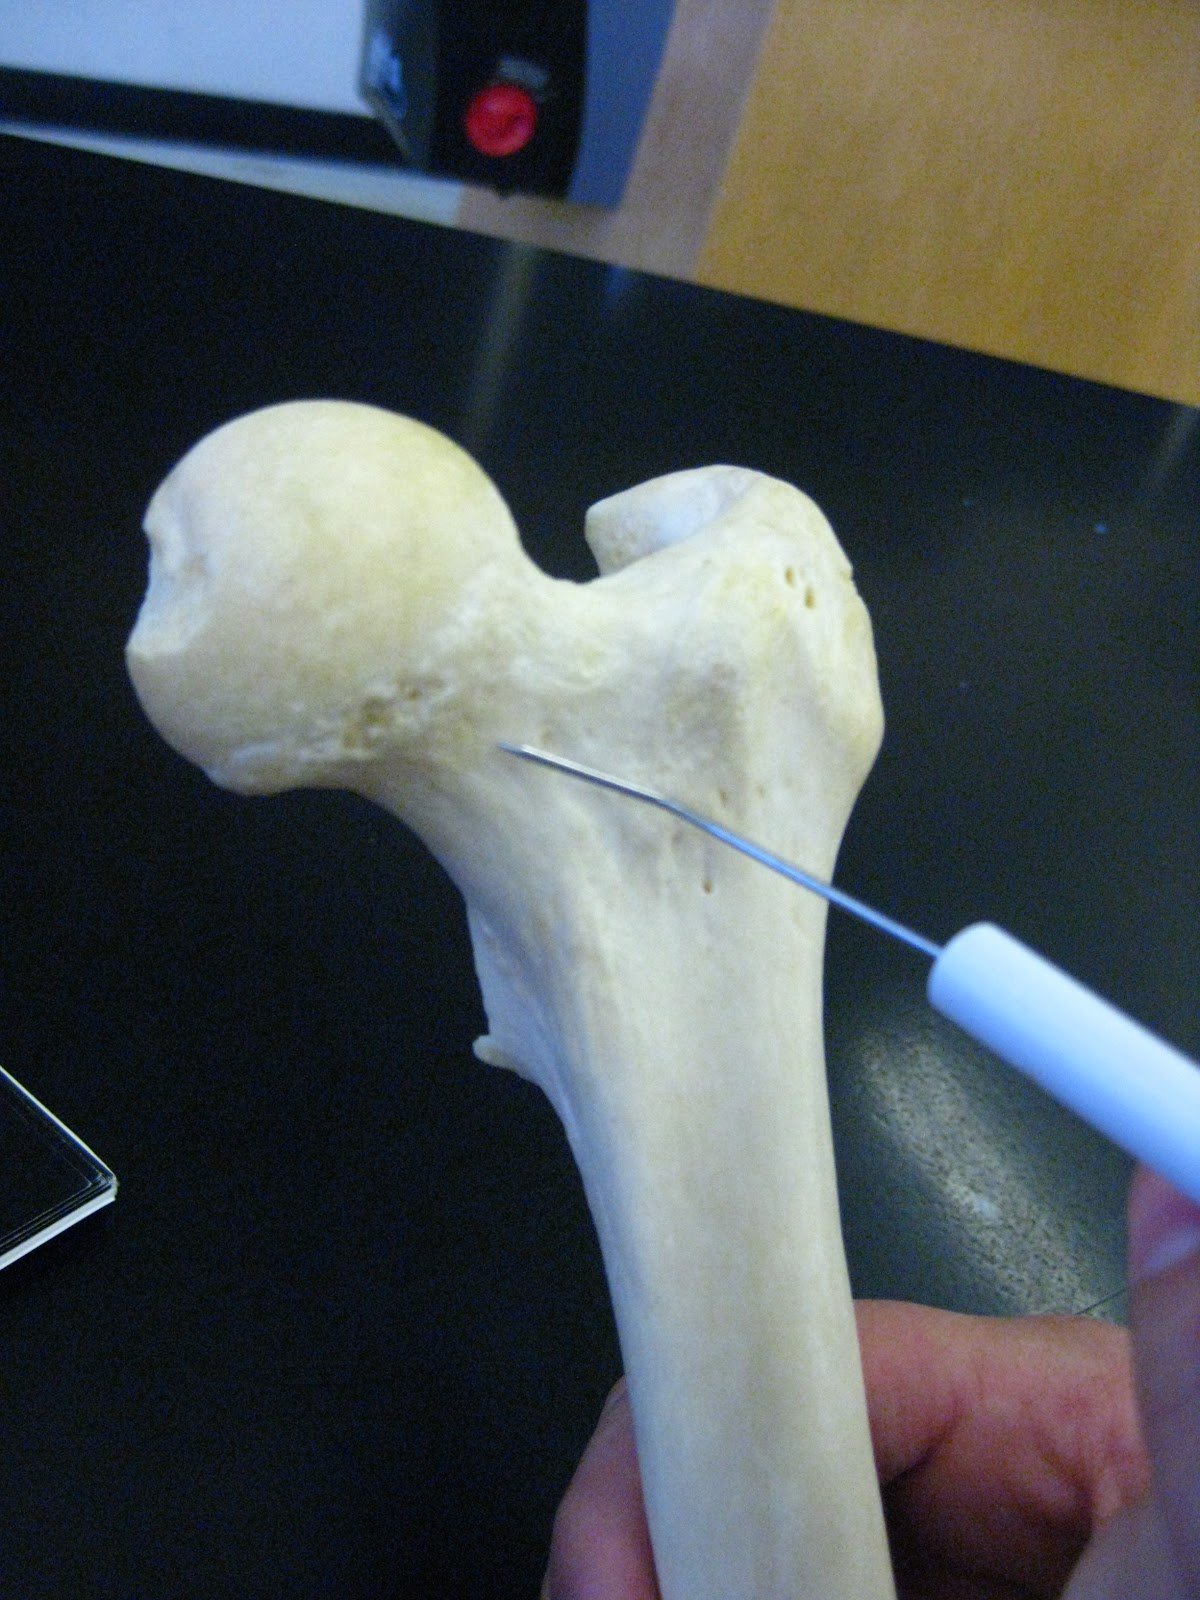 Boned: Human Skeleton - femur